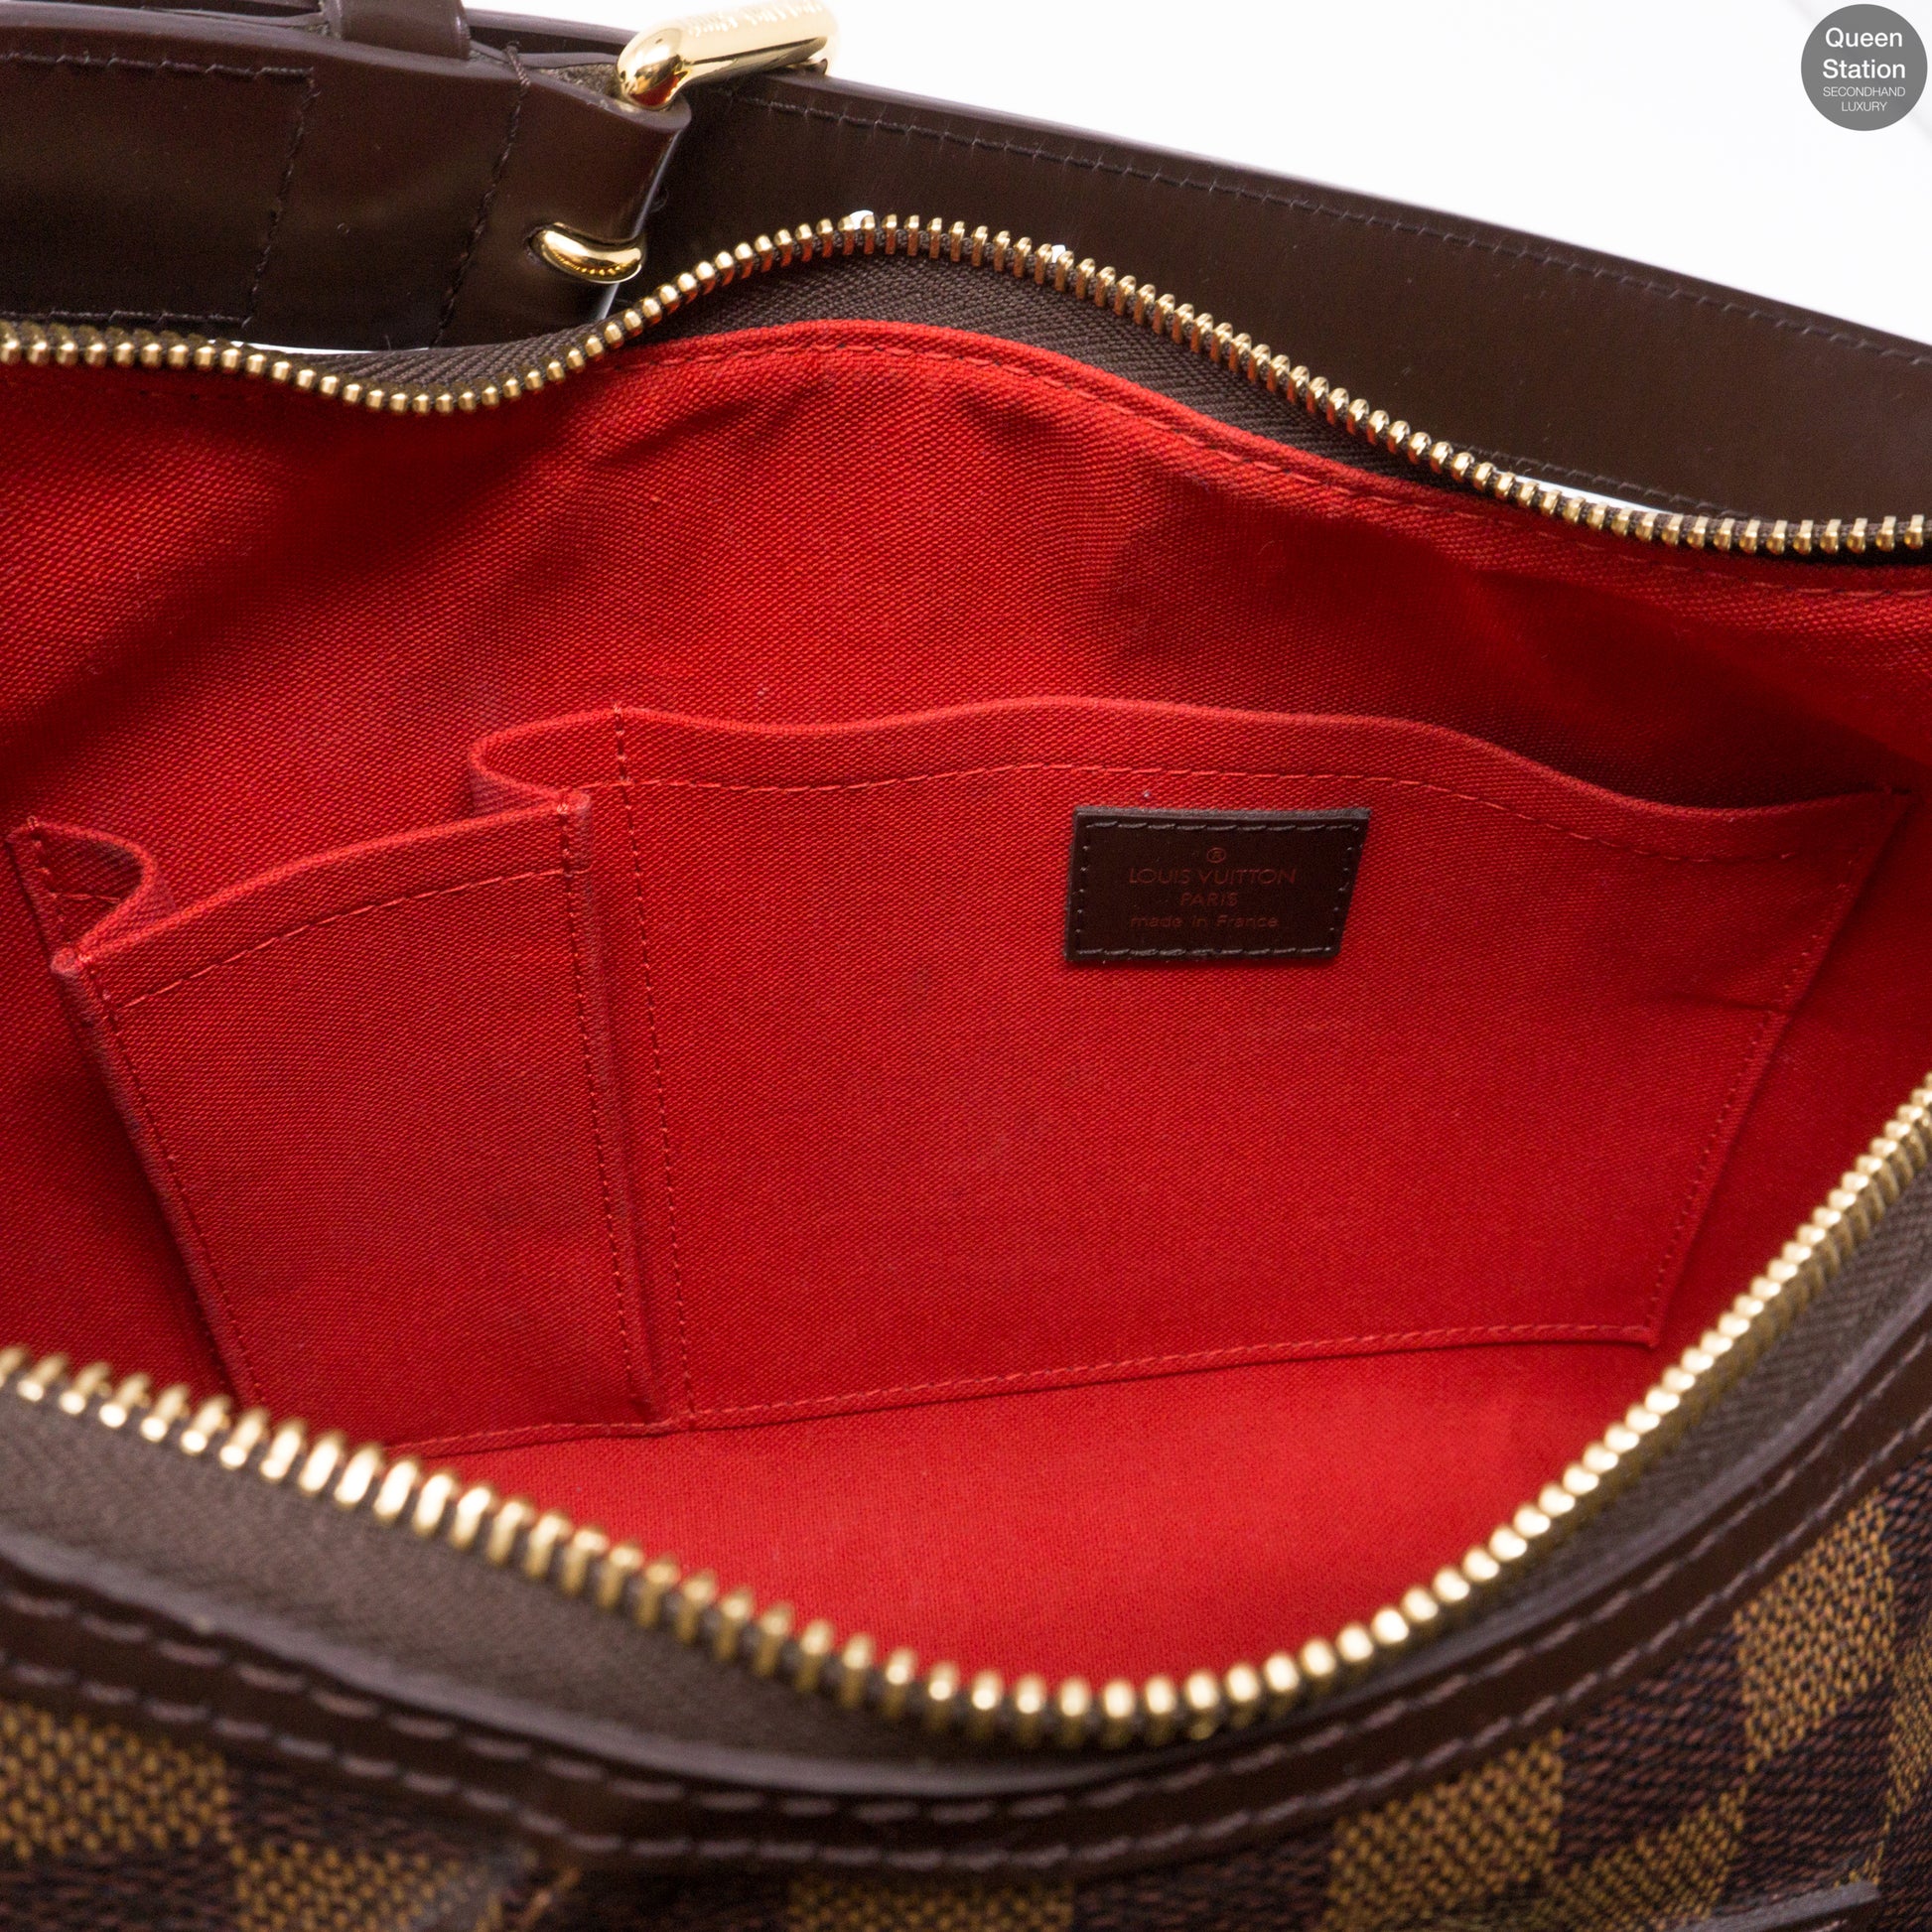 Thames GM Damier Ebene – Keeks Designer Handbags